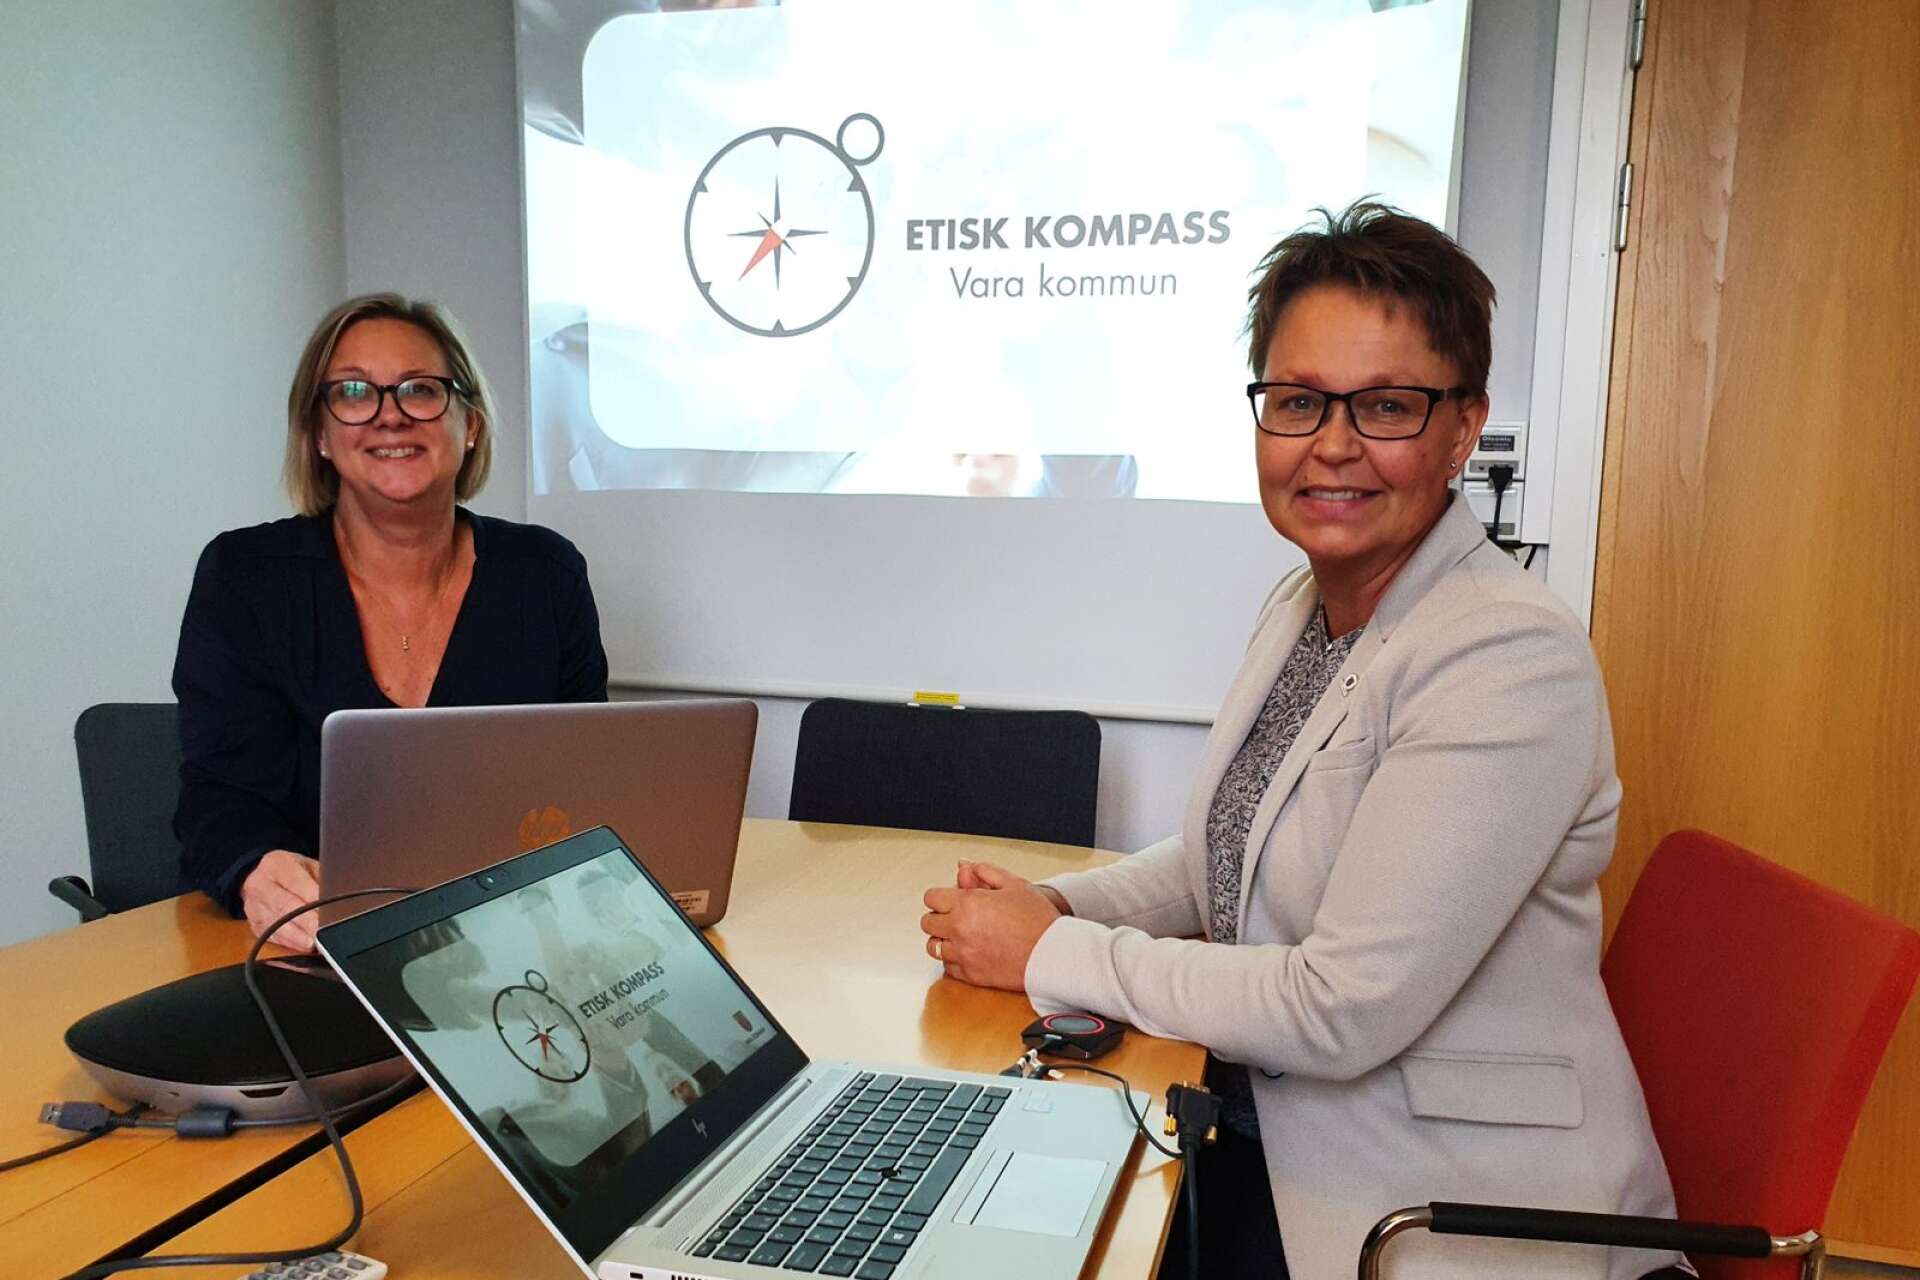 Mona Wallin och Anna Cederqvist förklarar att den etiska kompassen ytterst handlar om att ge bättre service till invånarna.